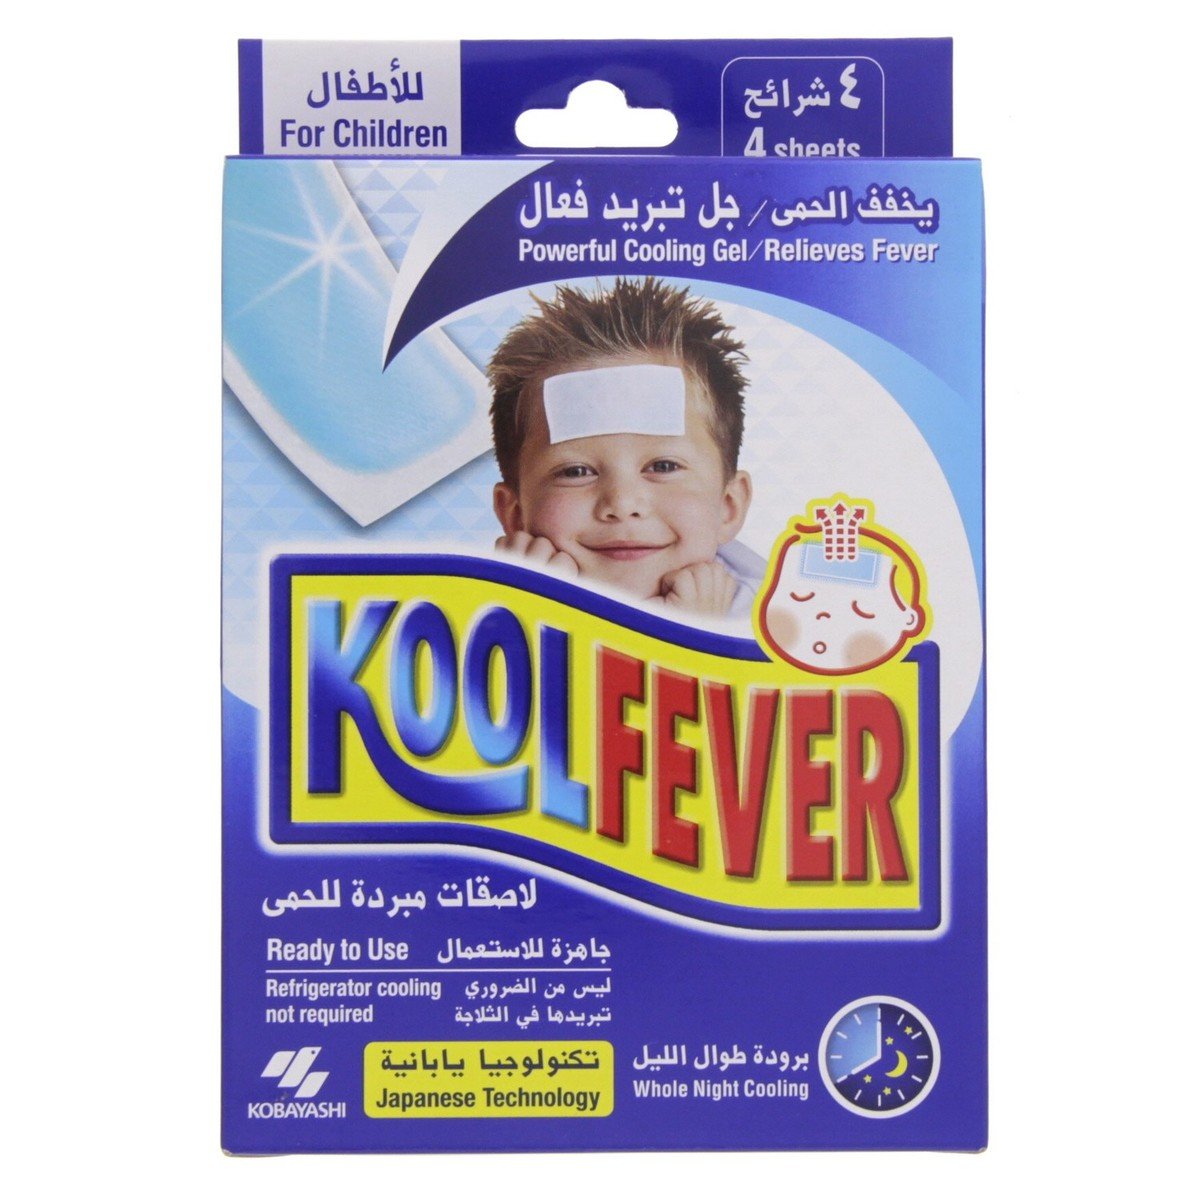 Kobayashi Kool Fever Powerful Cooling Gel For Children 4 Sheets